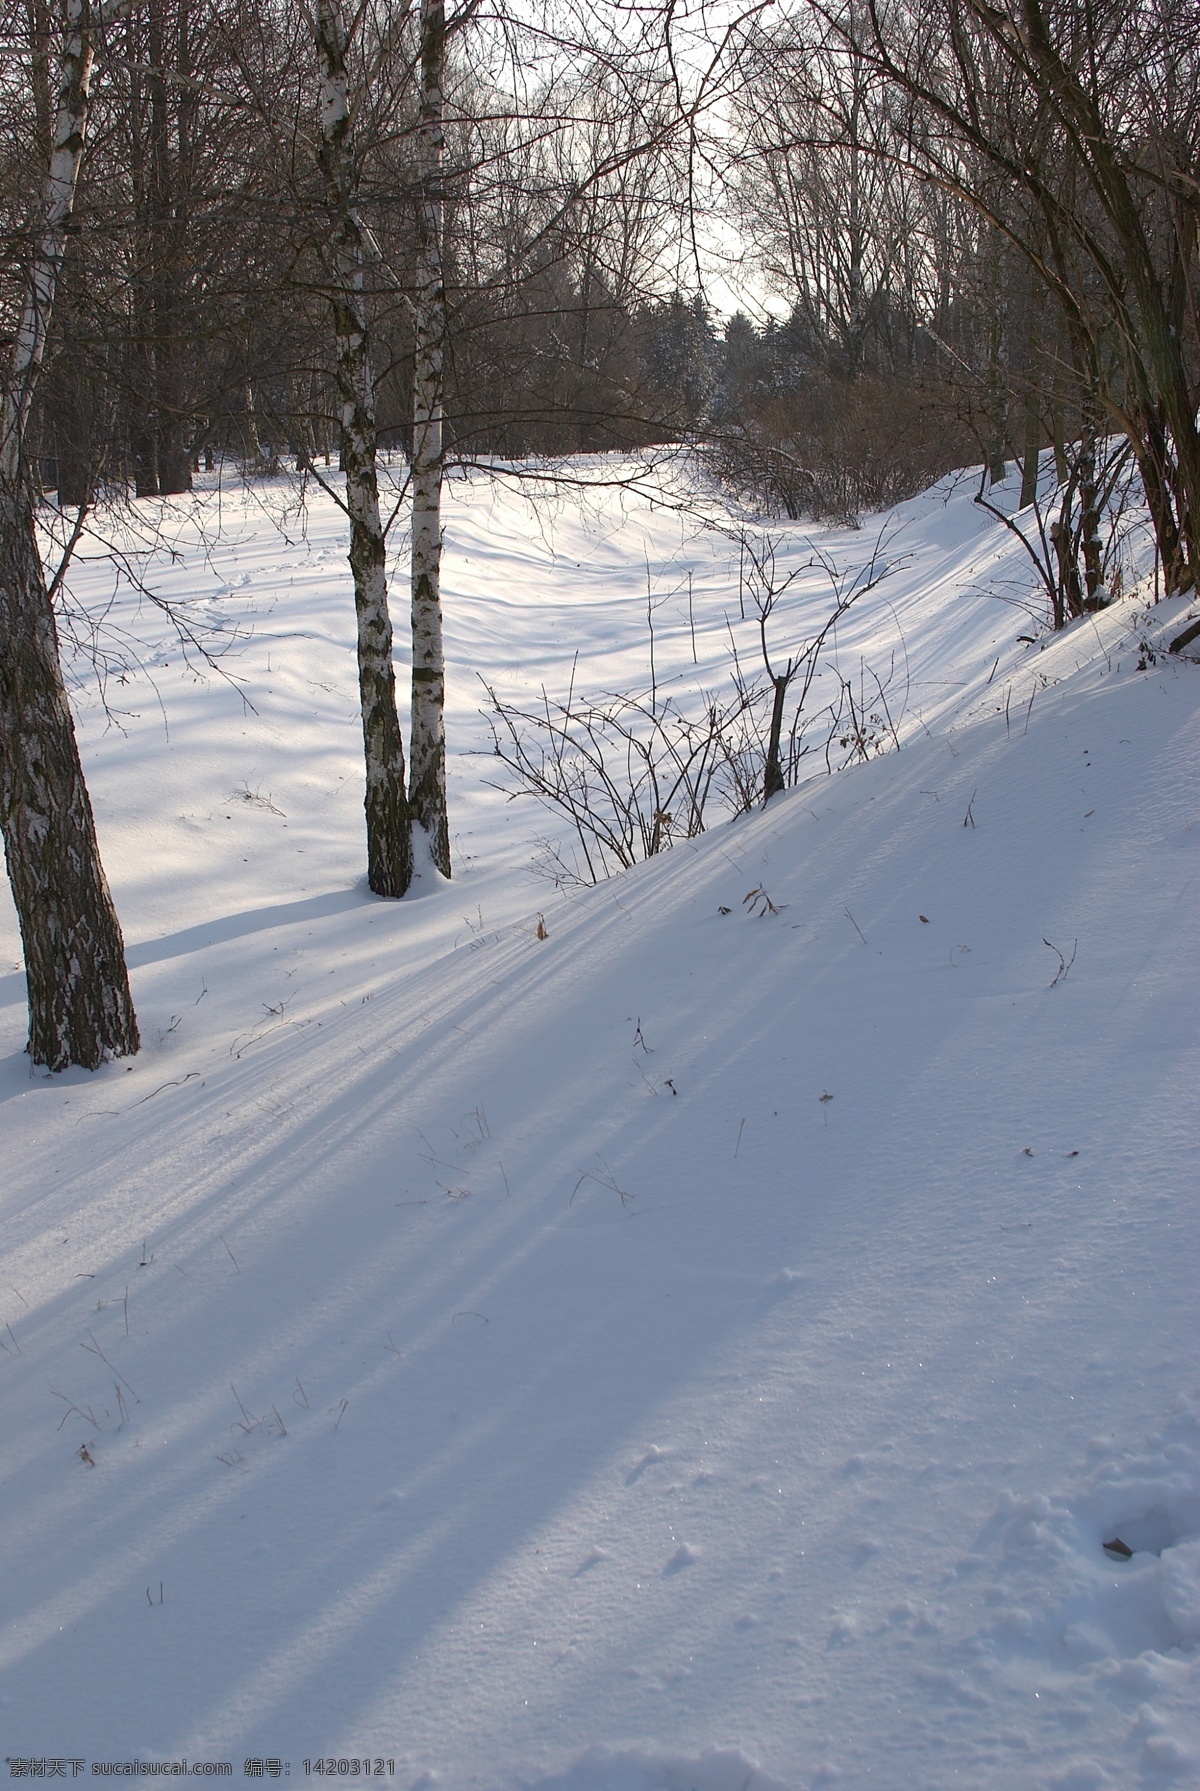 树林 里 白雪 冬天雪景 冬季 美丽风景 美丽雪景 积雪 风景摄影 树木 雪地 山水风景 风景图片